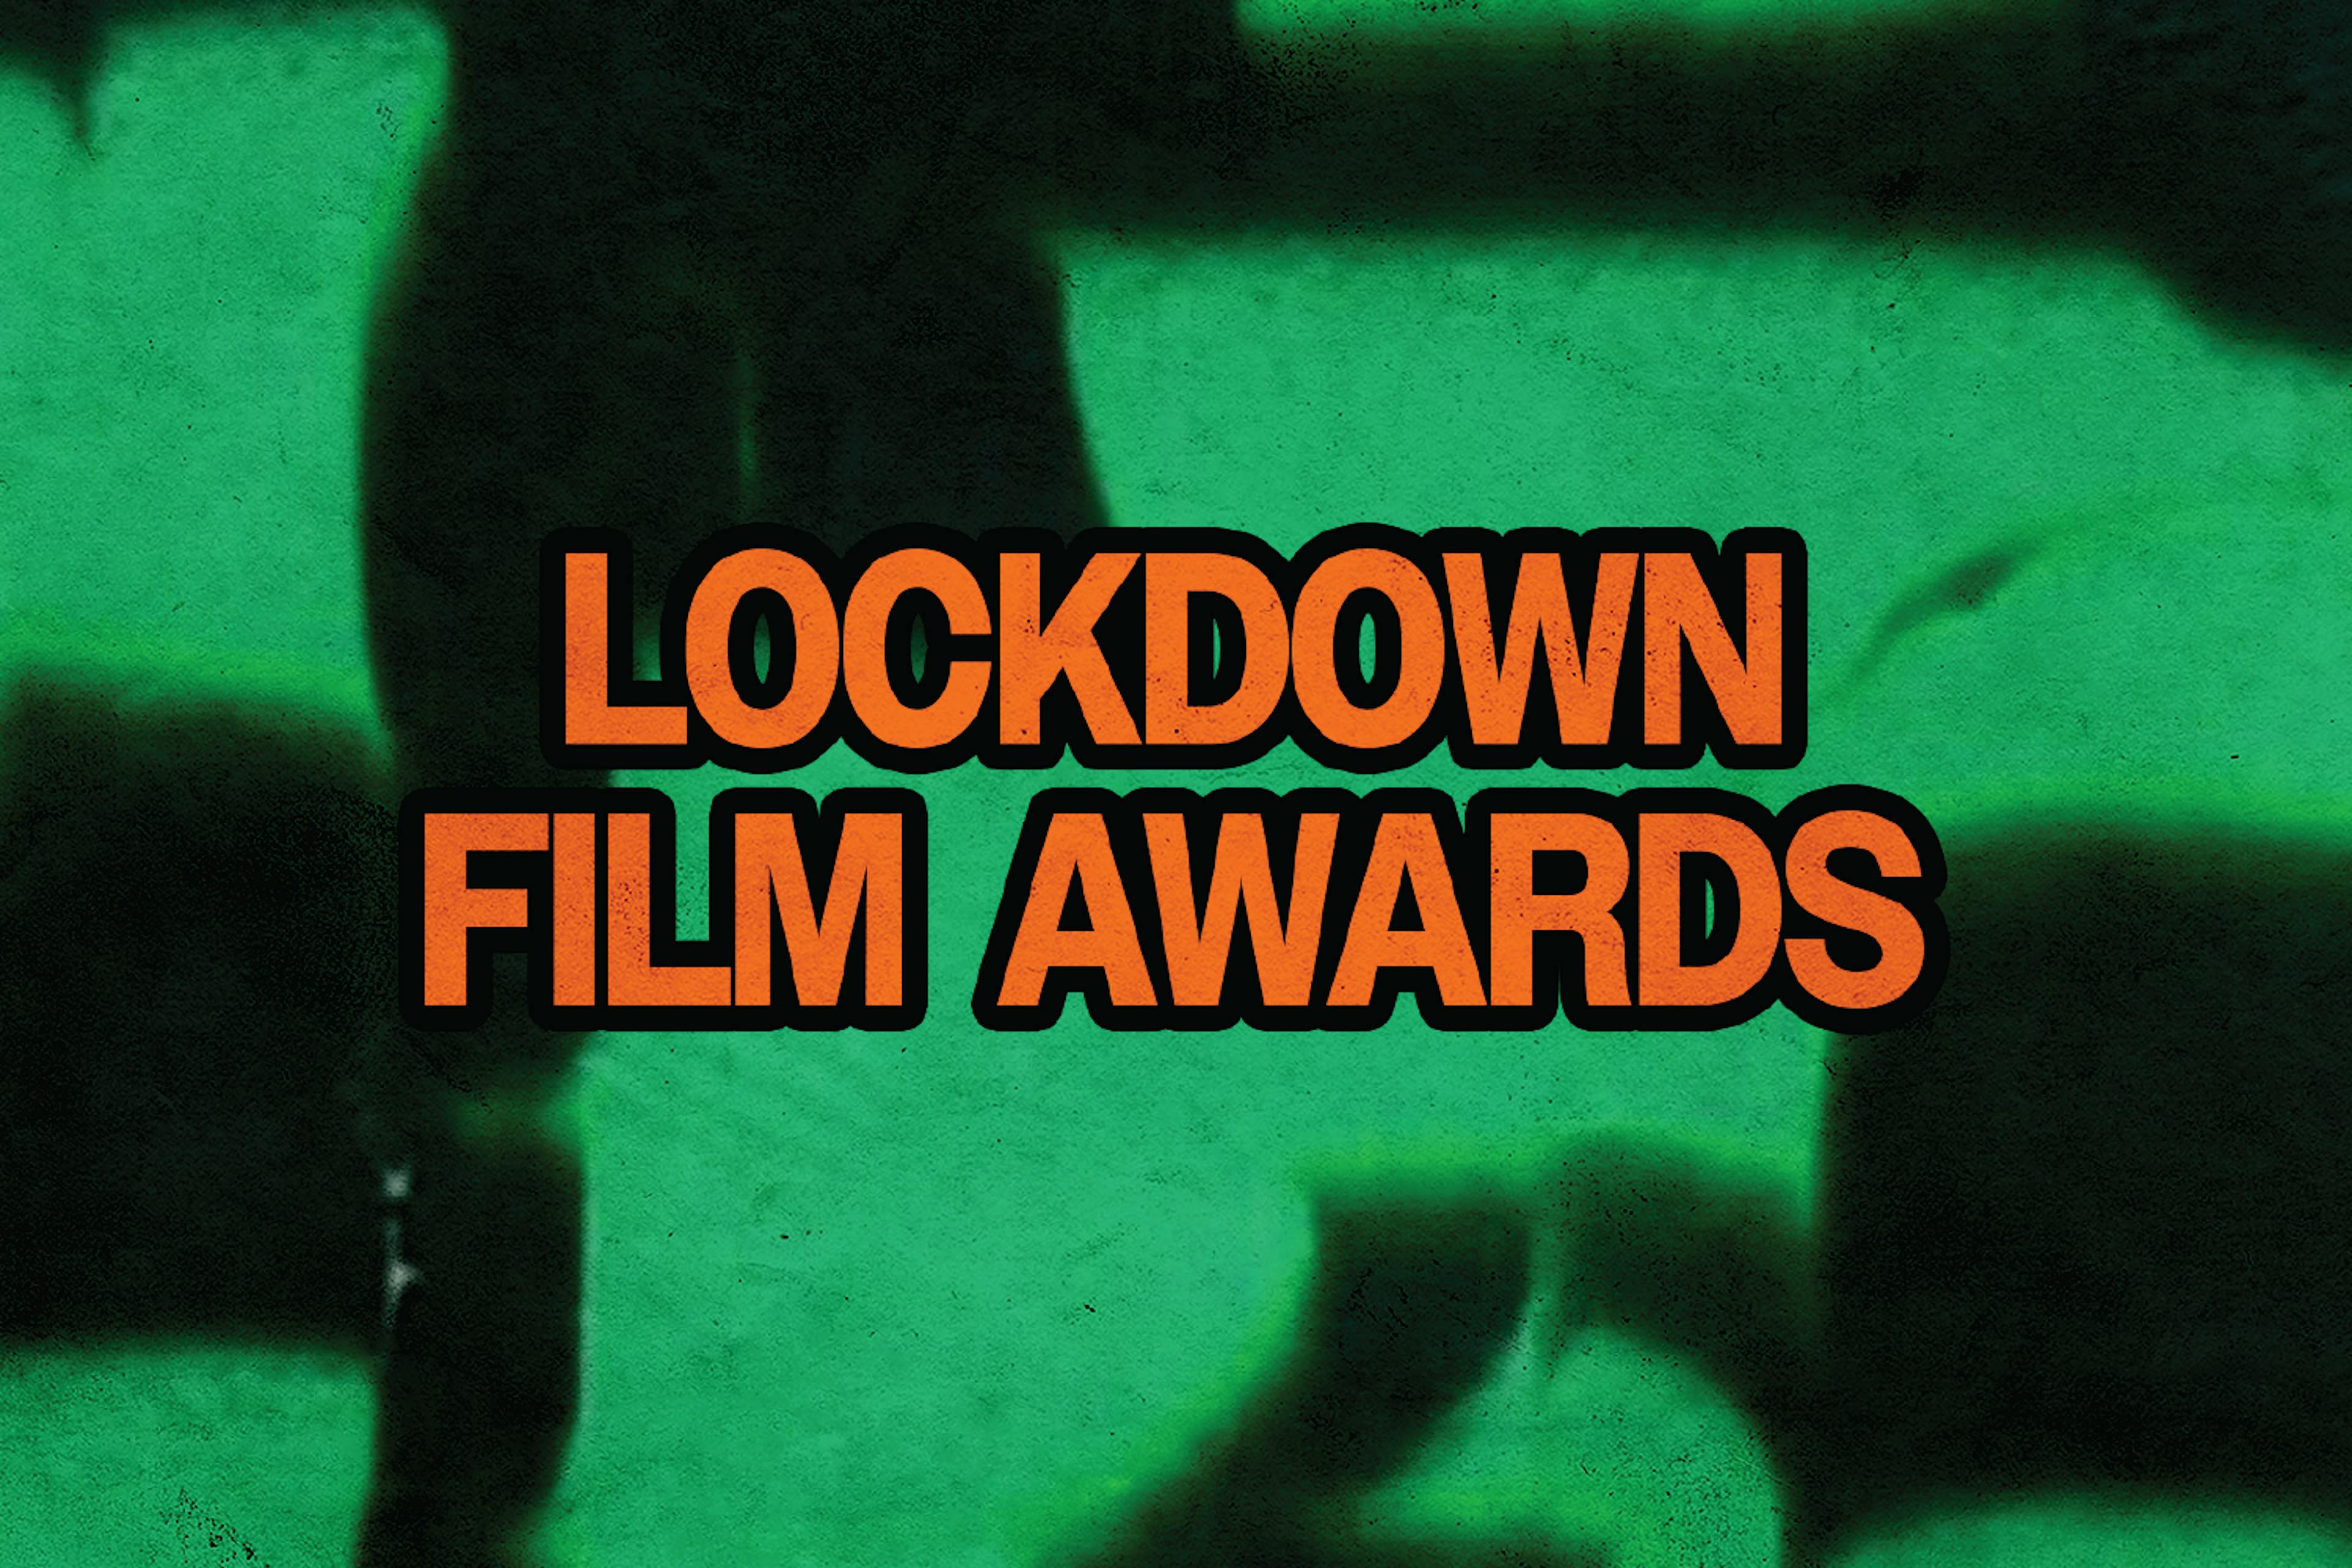 Slide that reads "LOCKDOWN FILM AWARDS"